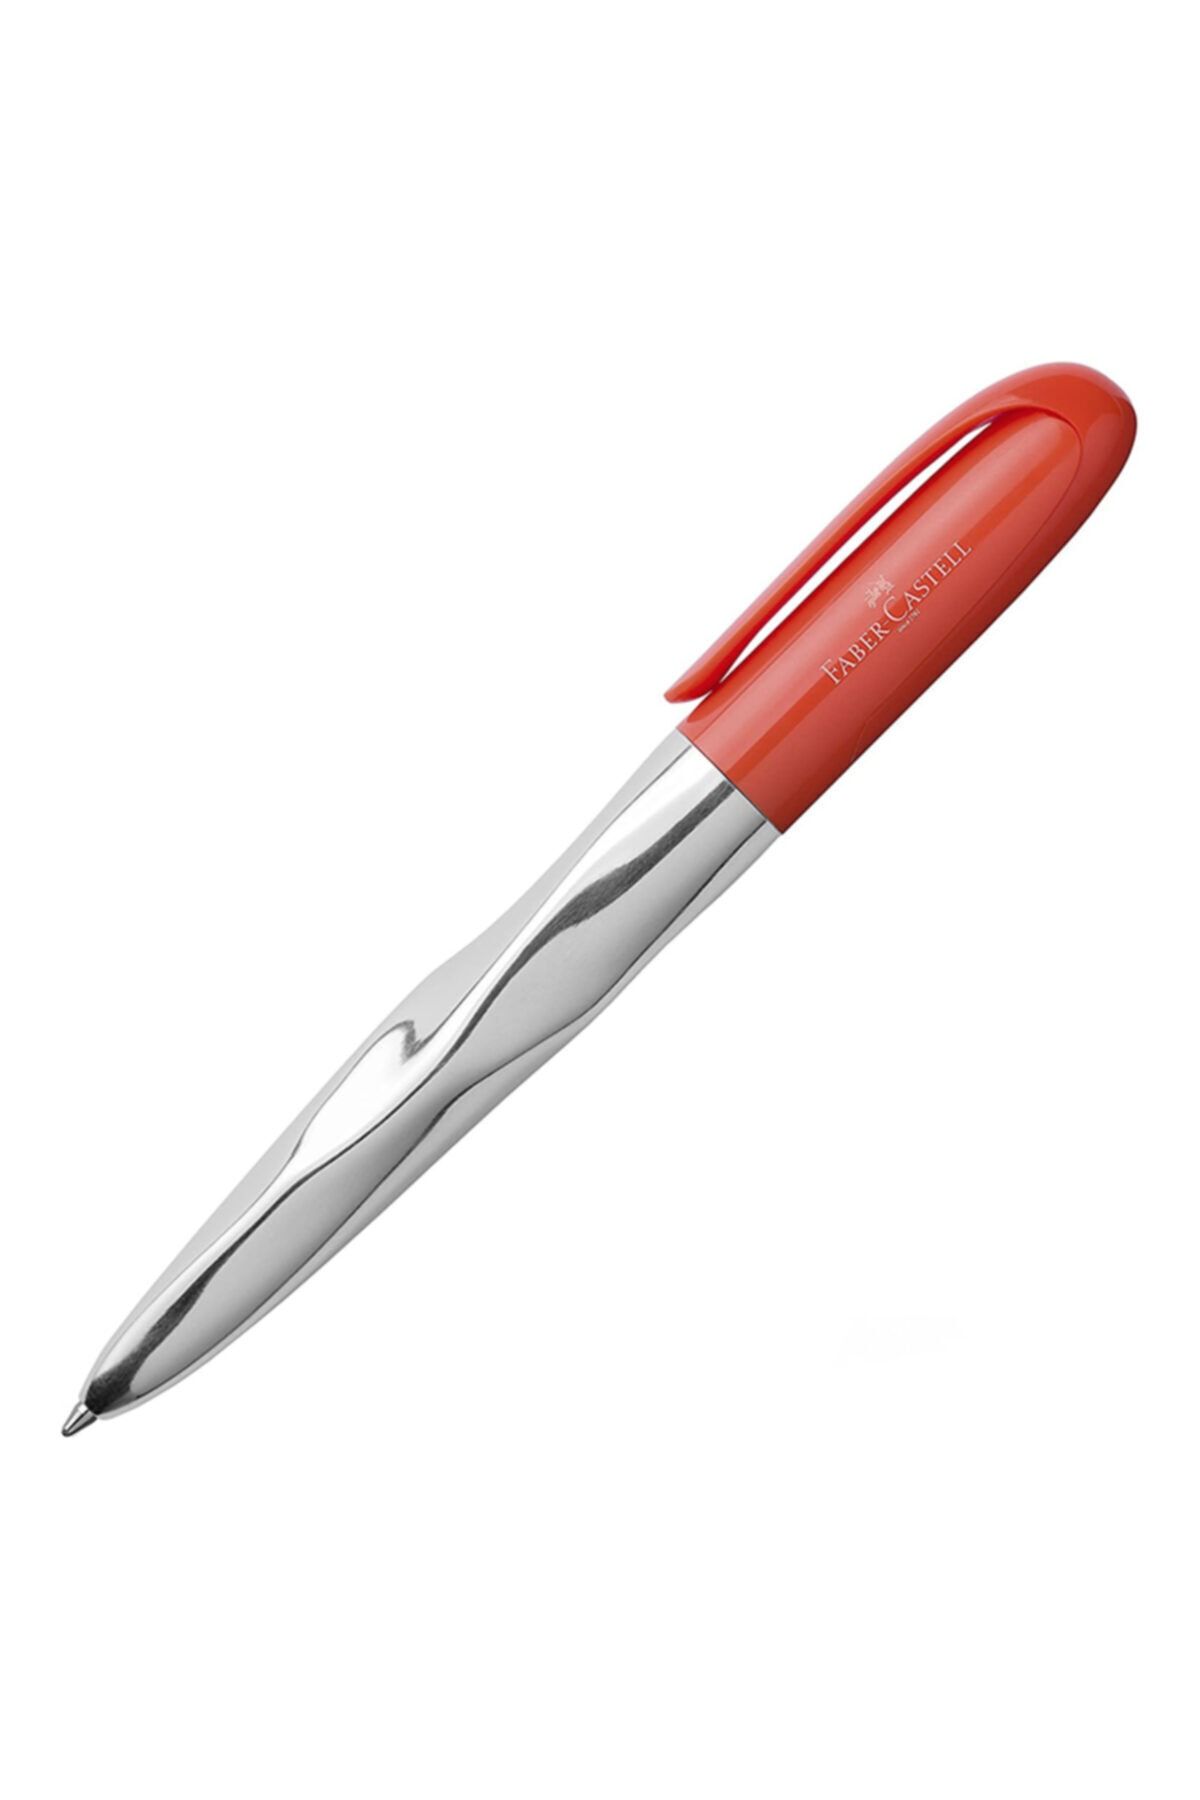 Faber Castell N'ice Pen Tükenmez Kalem Mercan - Kırmızı